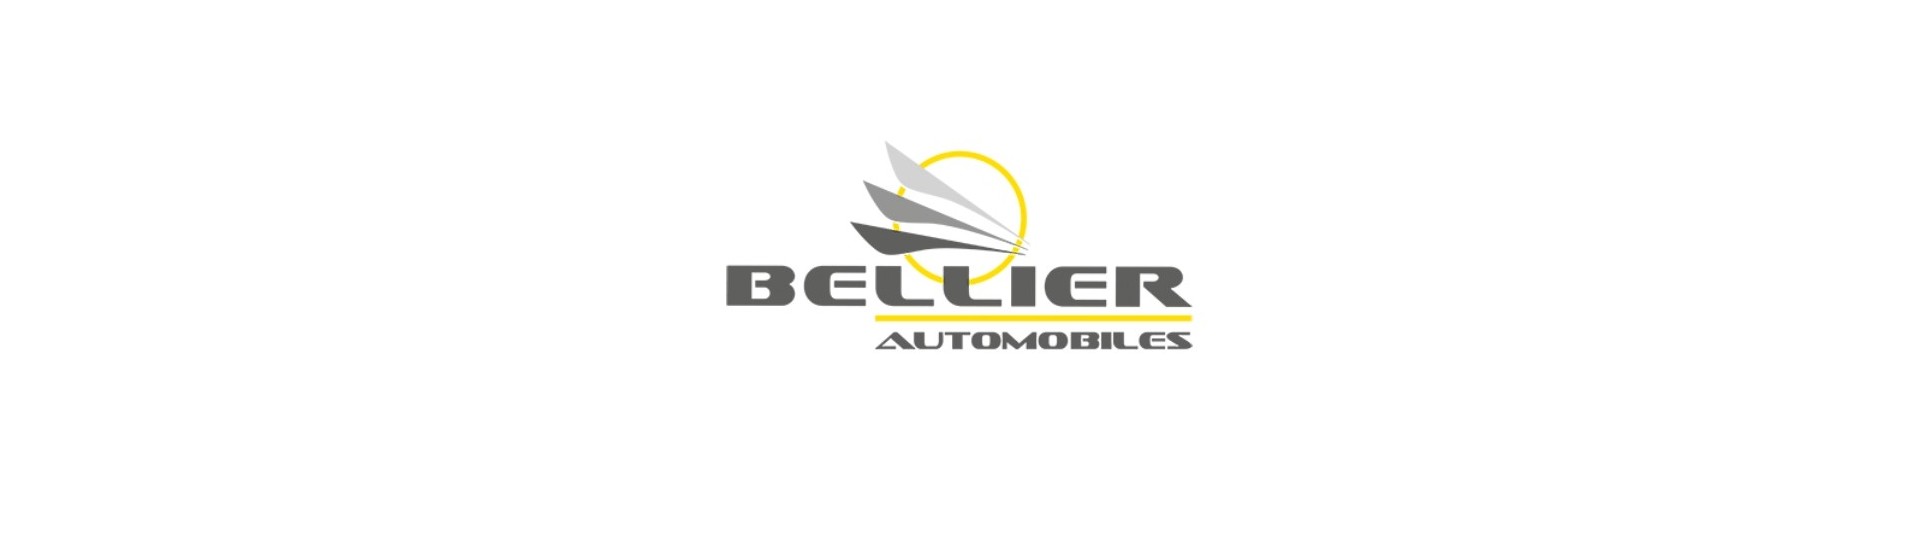 Porca de roda ao melhor preço para um carro sem licença Bellier